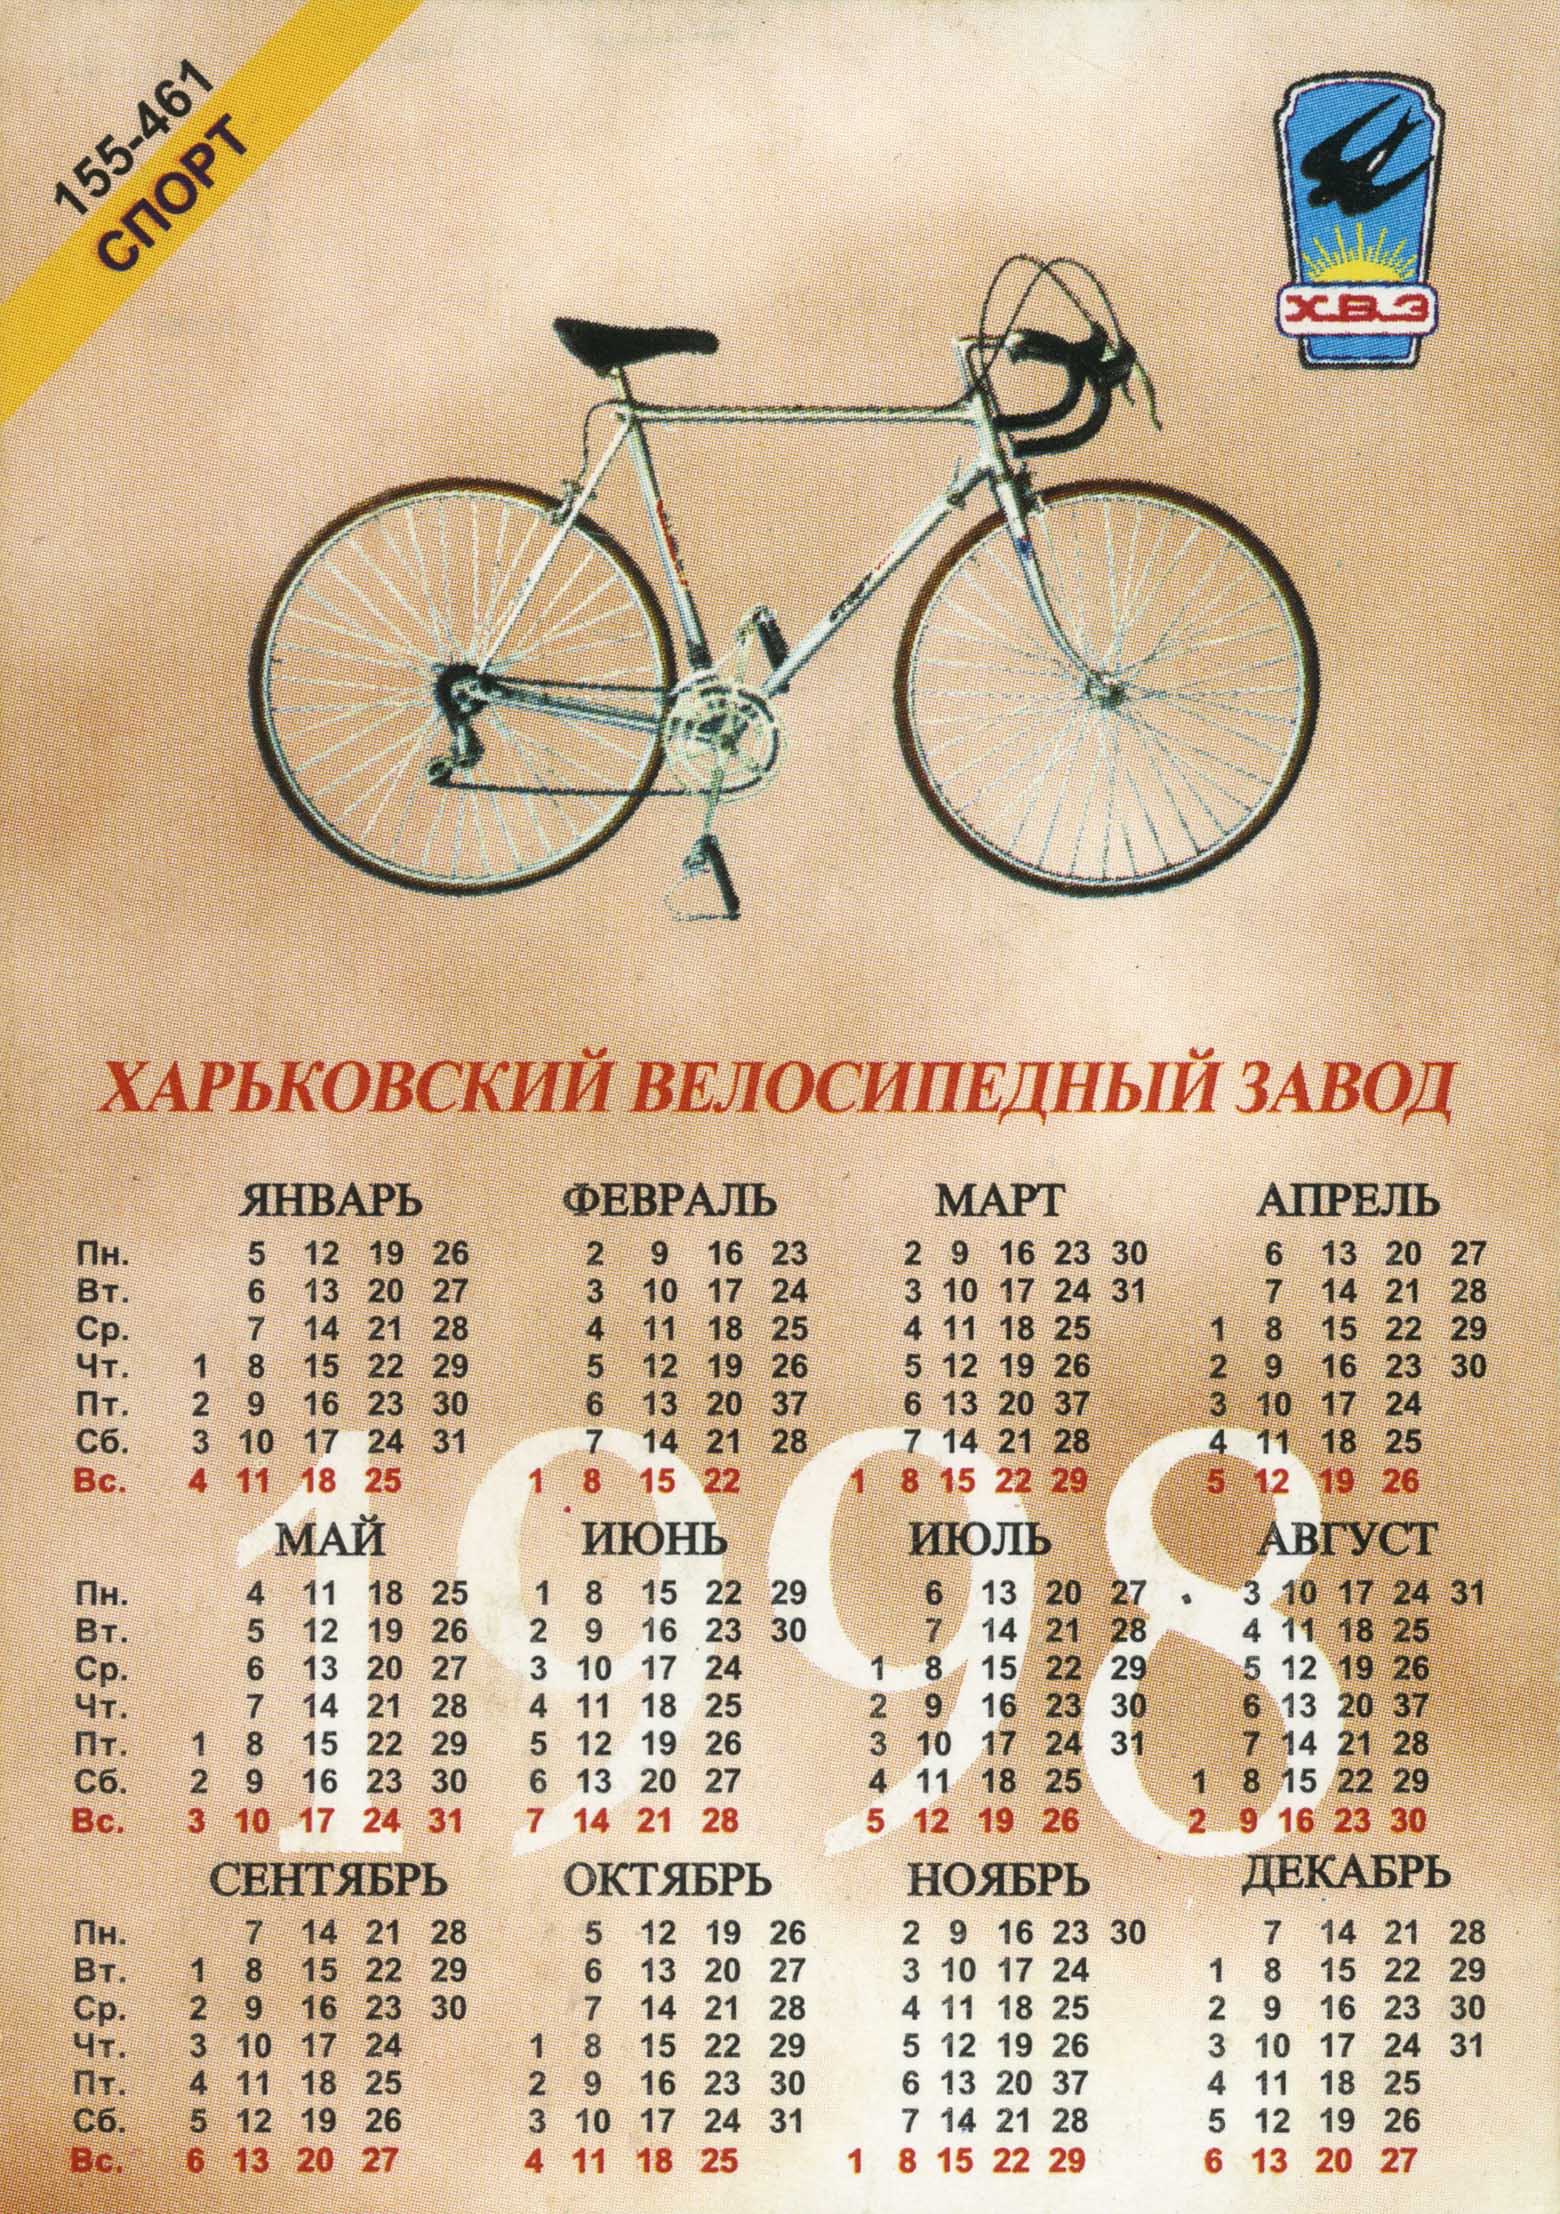 Kharkov calendar 1998/1999 - Sport (155-461) & Mnogoskorostnoy (153-462) scan 1 main image